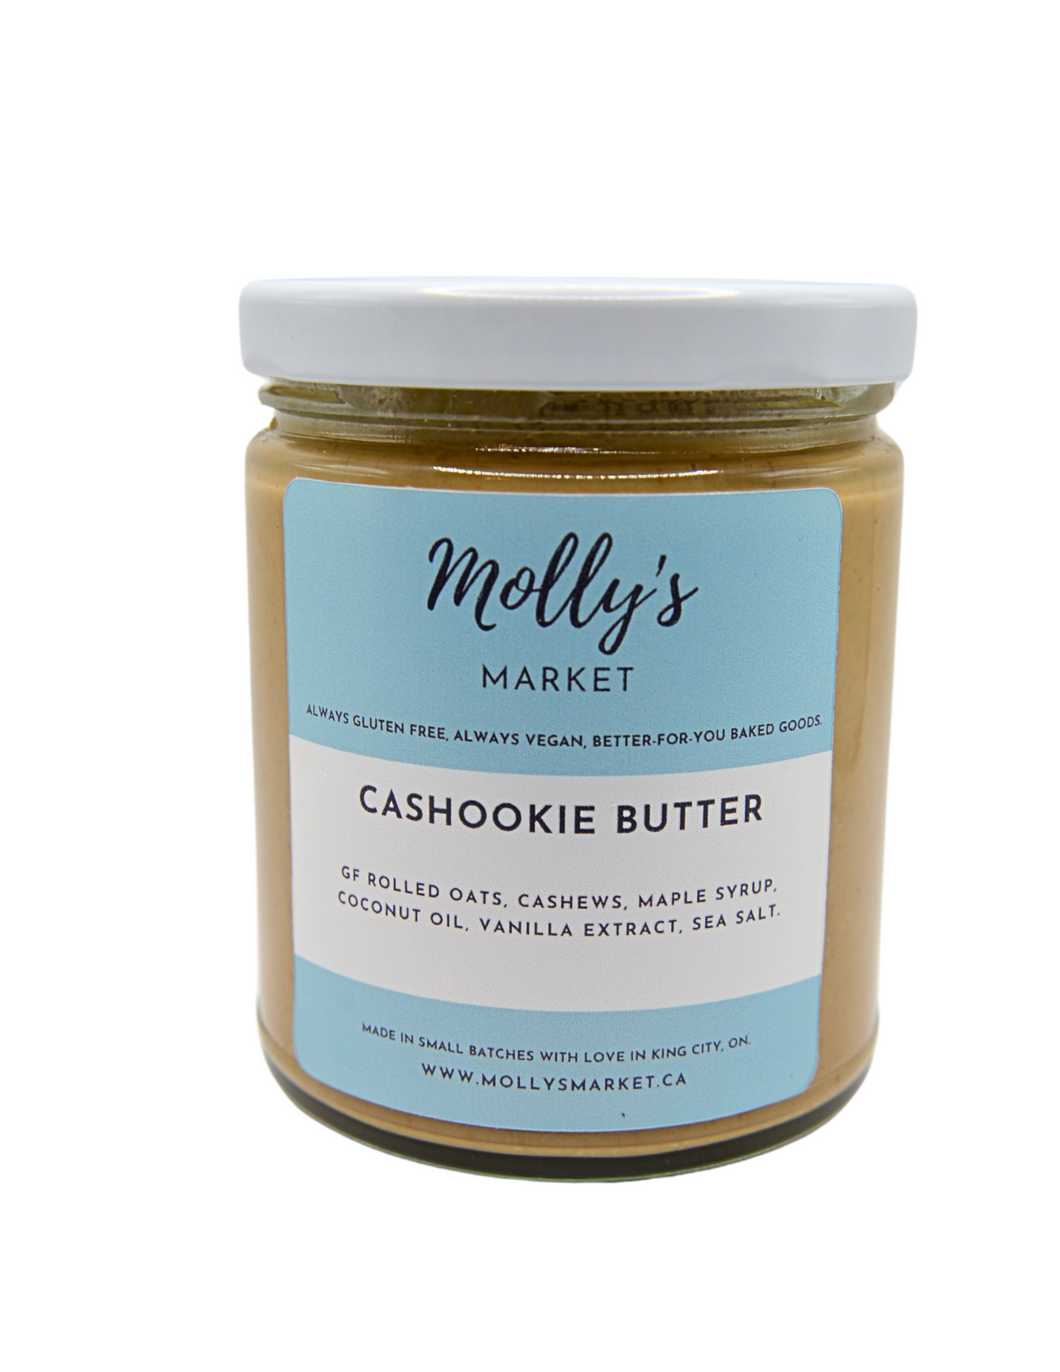 Molly's Cashookie Butter